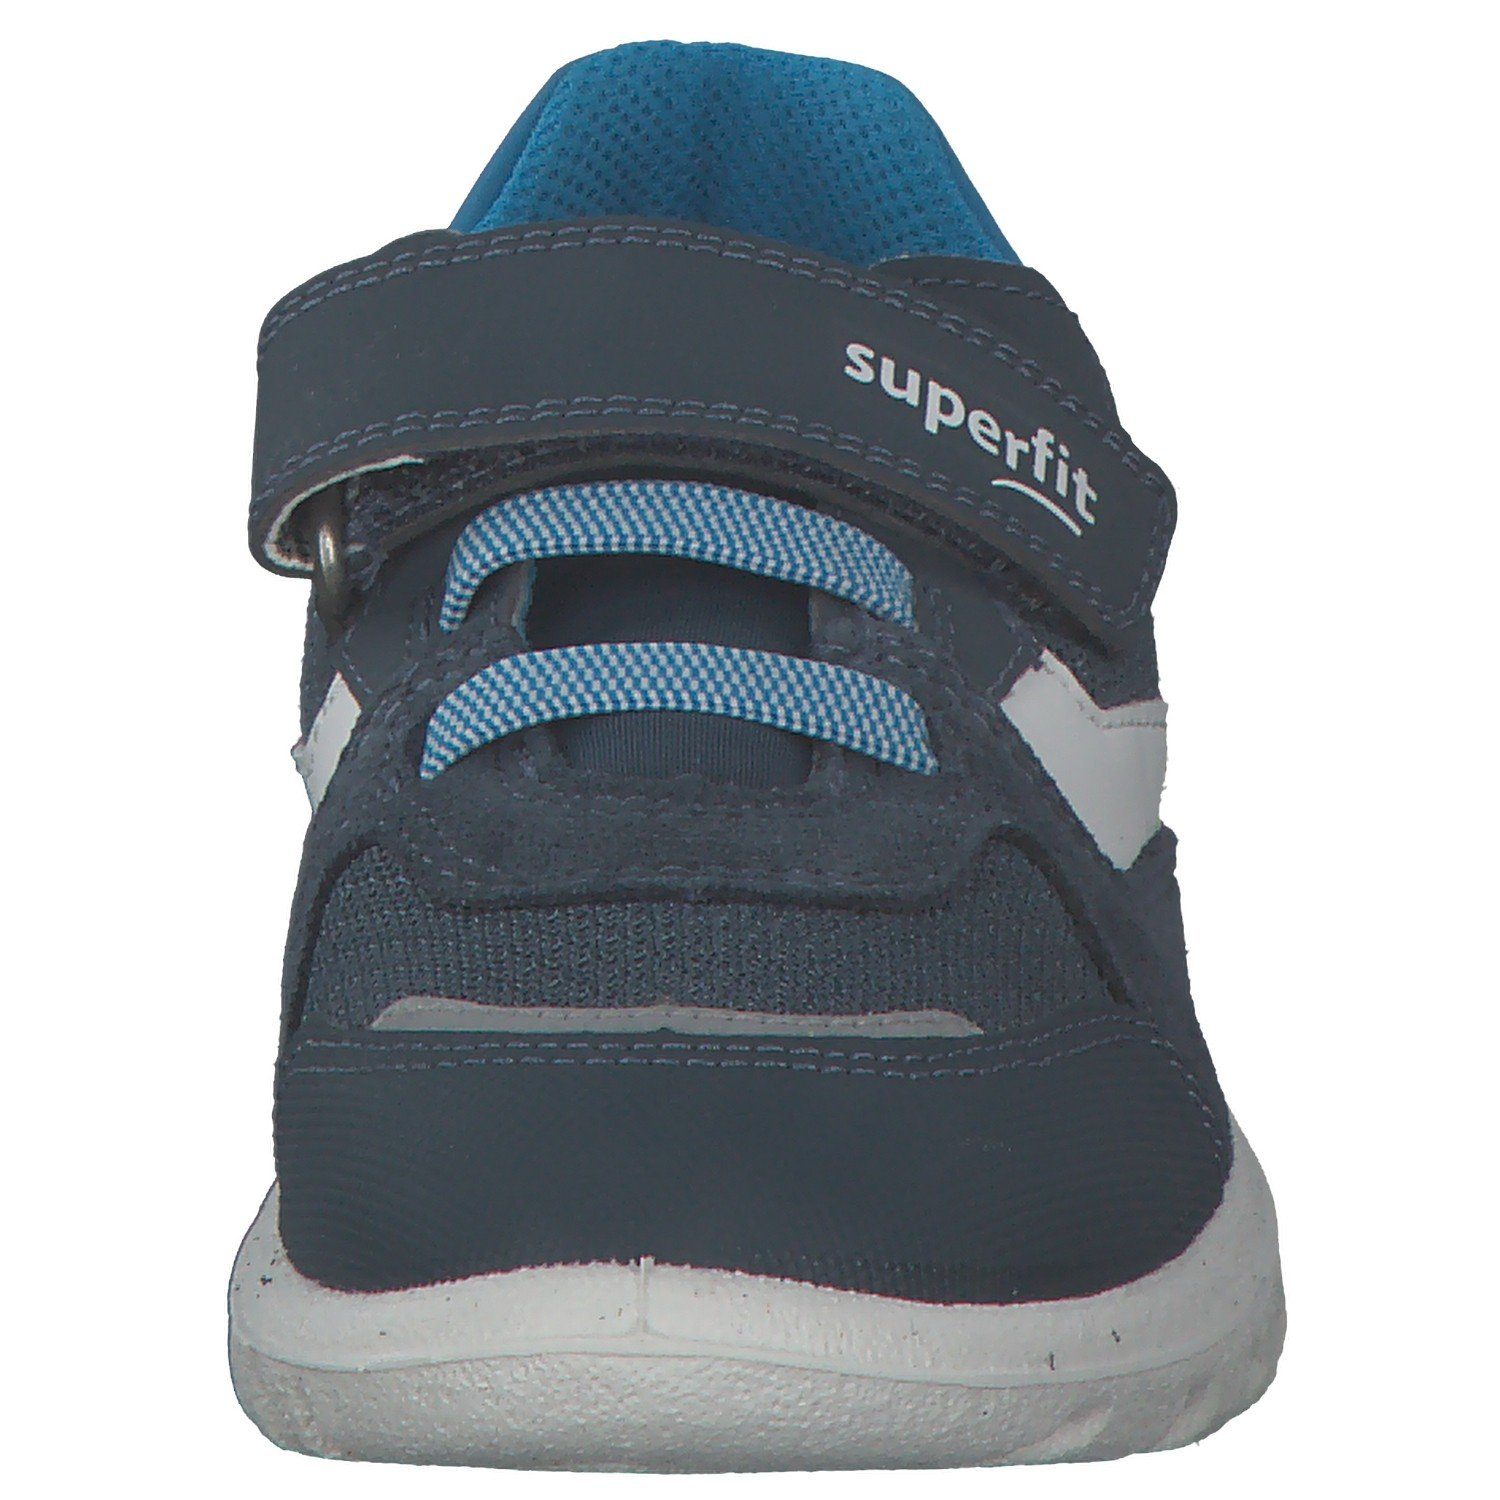 Superfit Superfit 06195 Sneaker